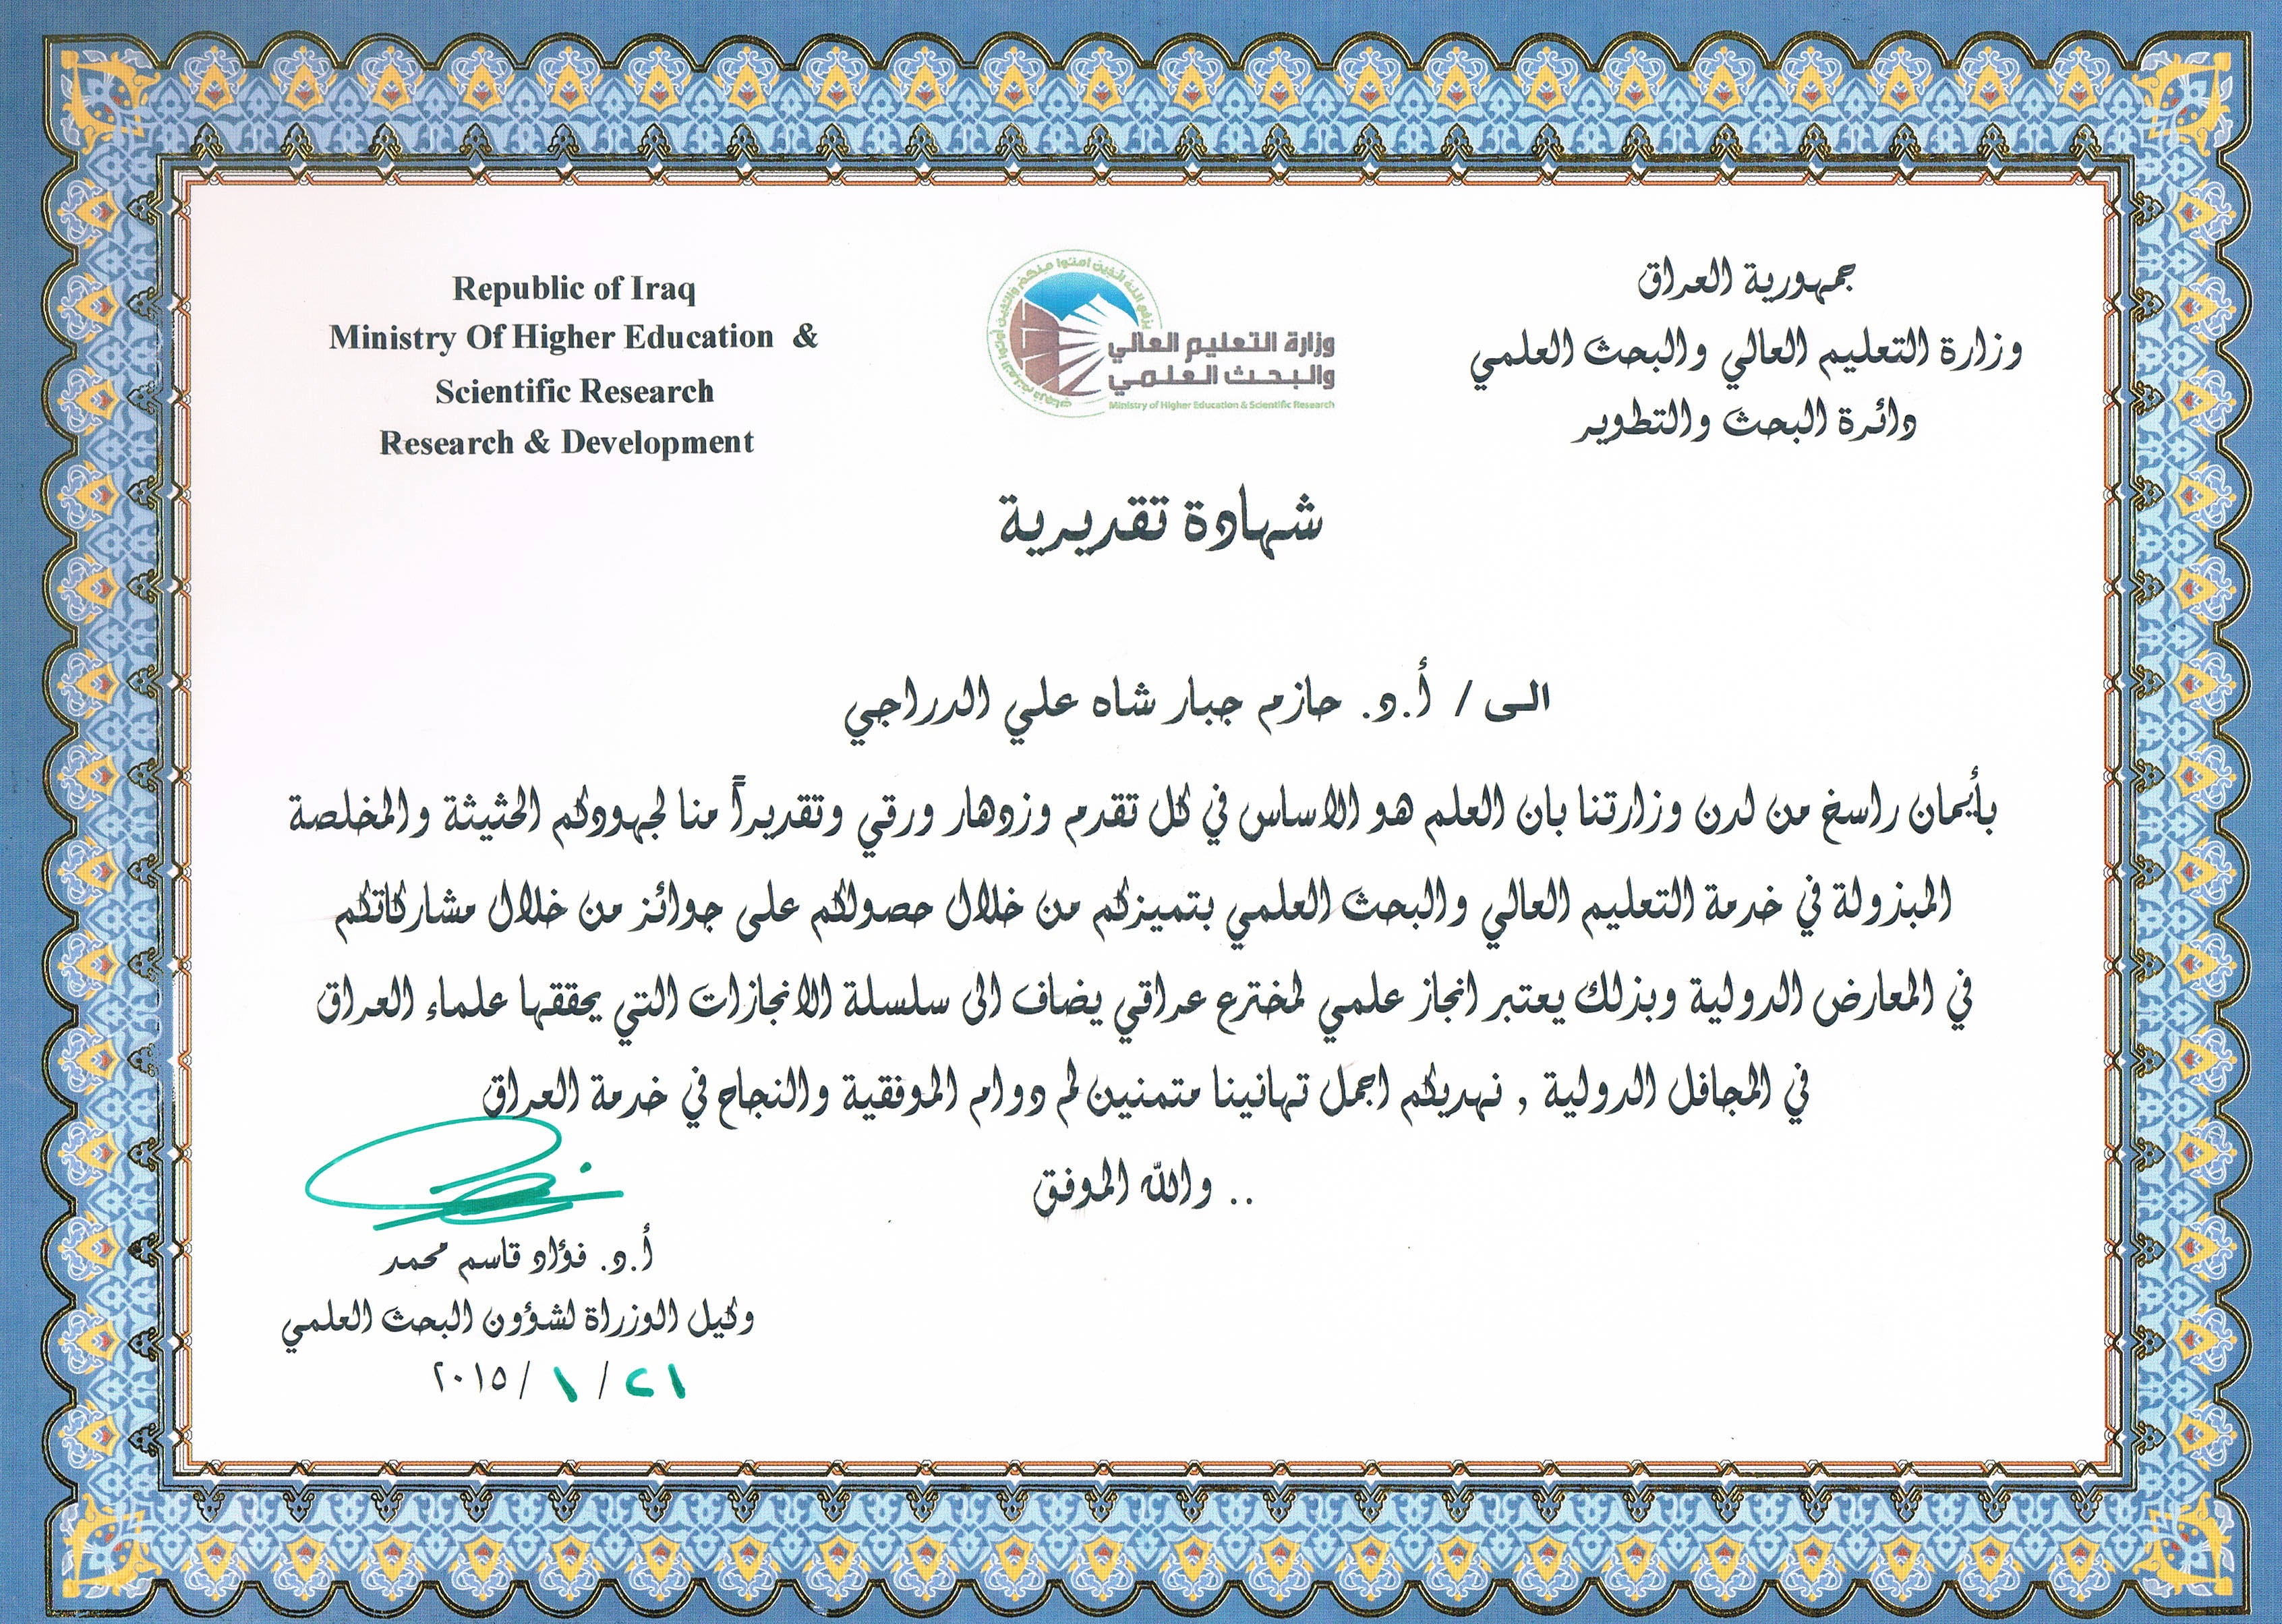 شهادة تقديرية للأستاذ الدكتور حازم جبار الدراجي من السيد وكيل الوزارة